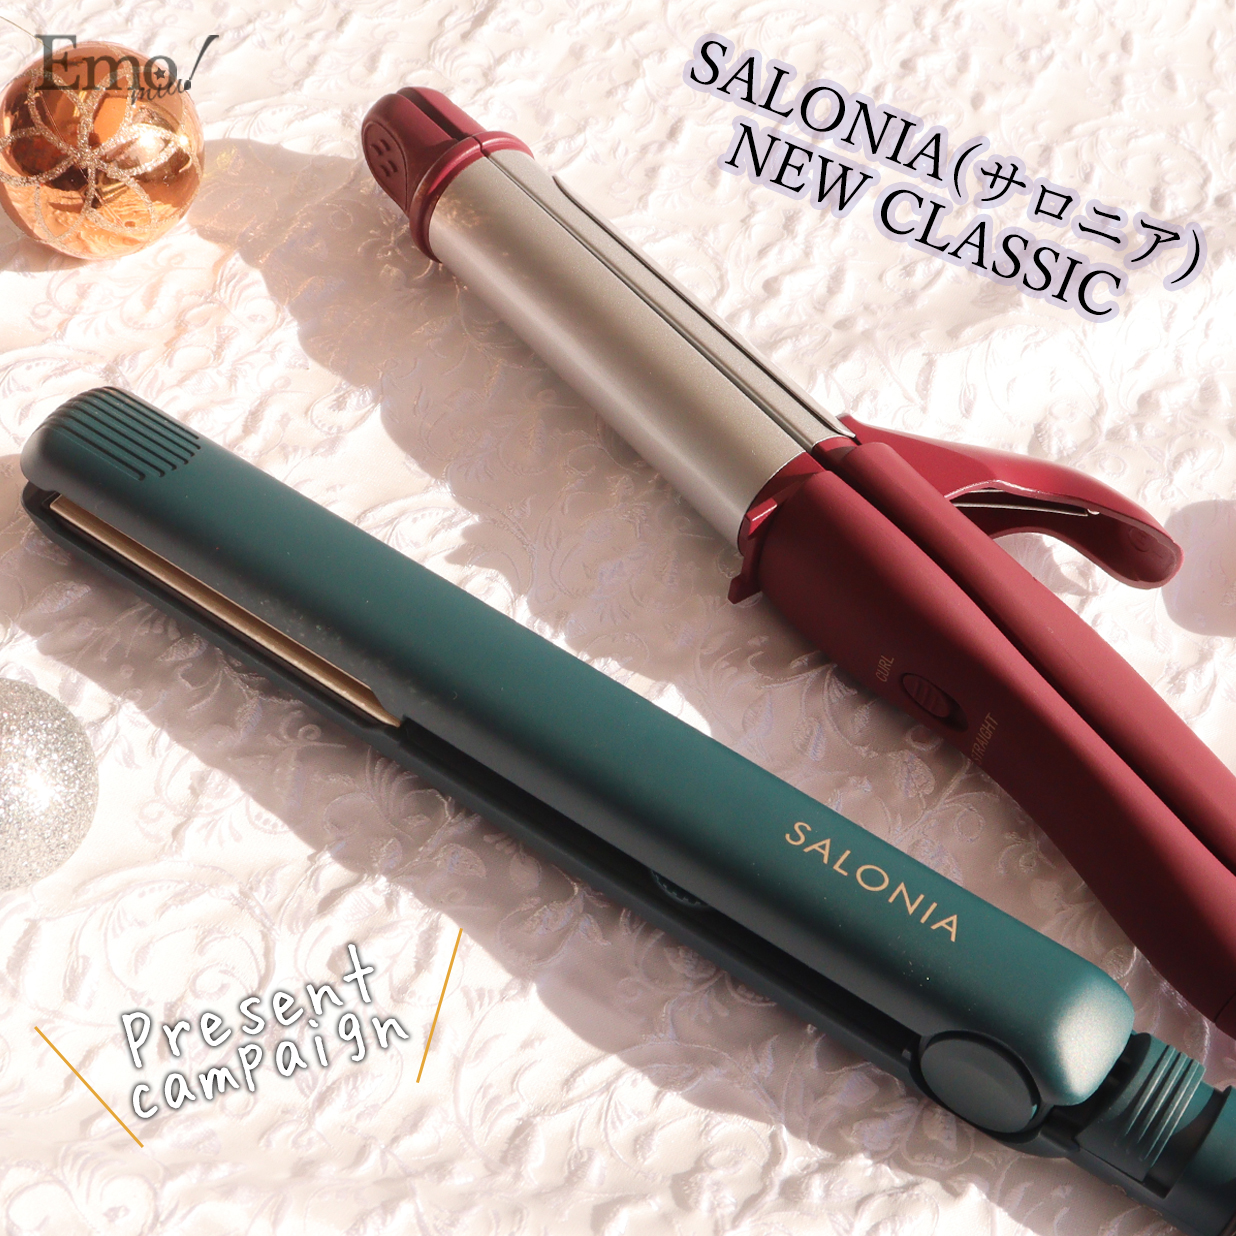 SALONIA ストレートヘアアイロン 15mm ニュークラシックグリーン 【67%OFF!】 15mm